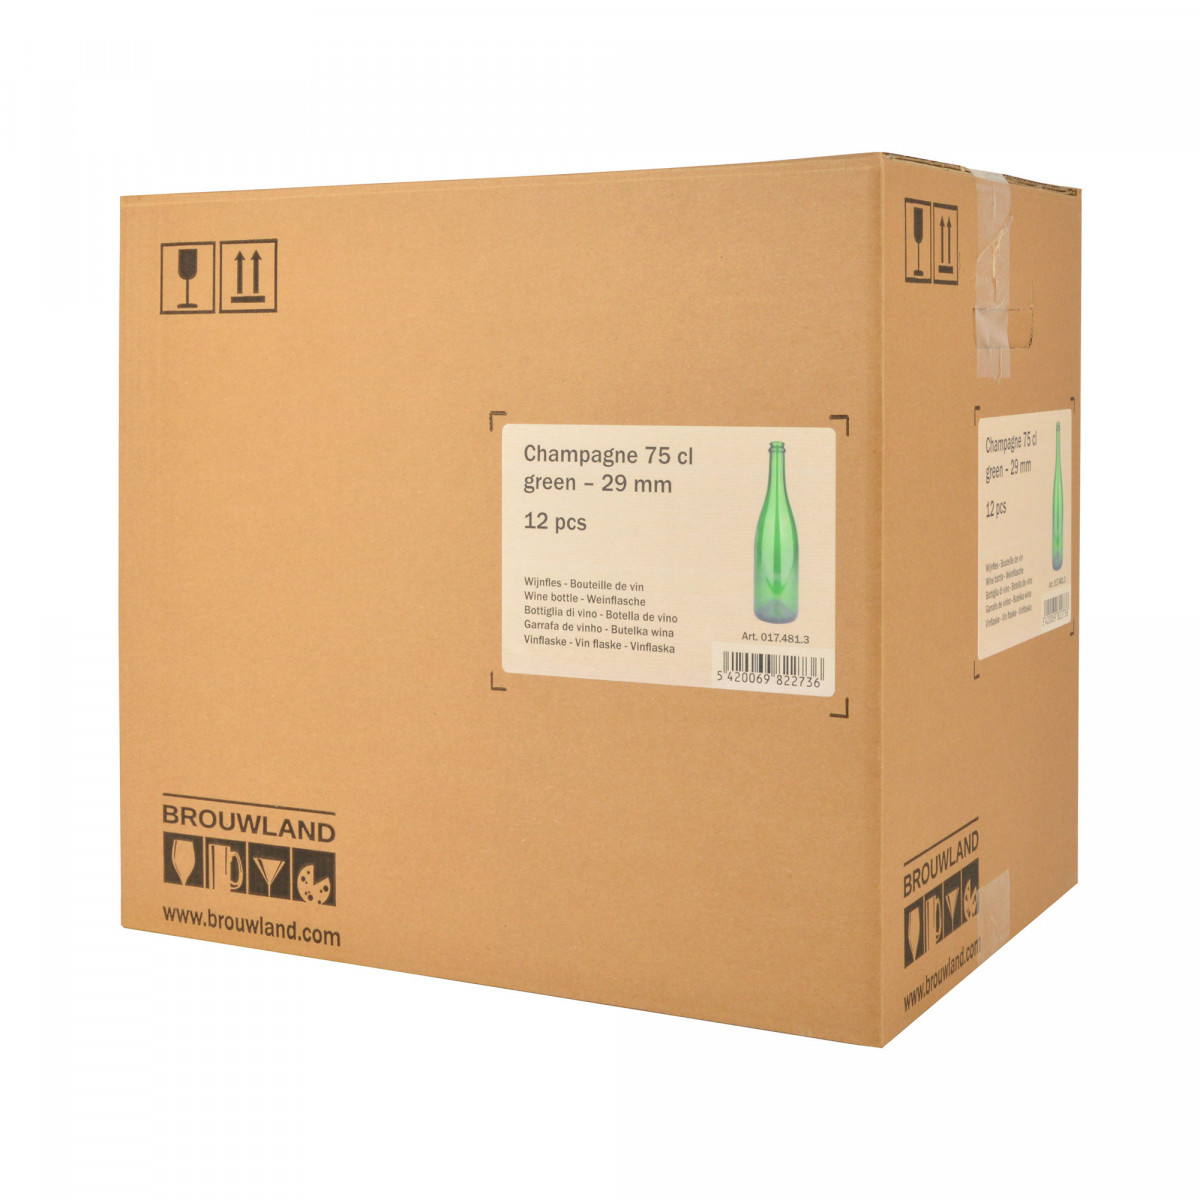 Bouteille Champagne 75 cl, 775 g, vert, 29 mm, boîte 12 pcs